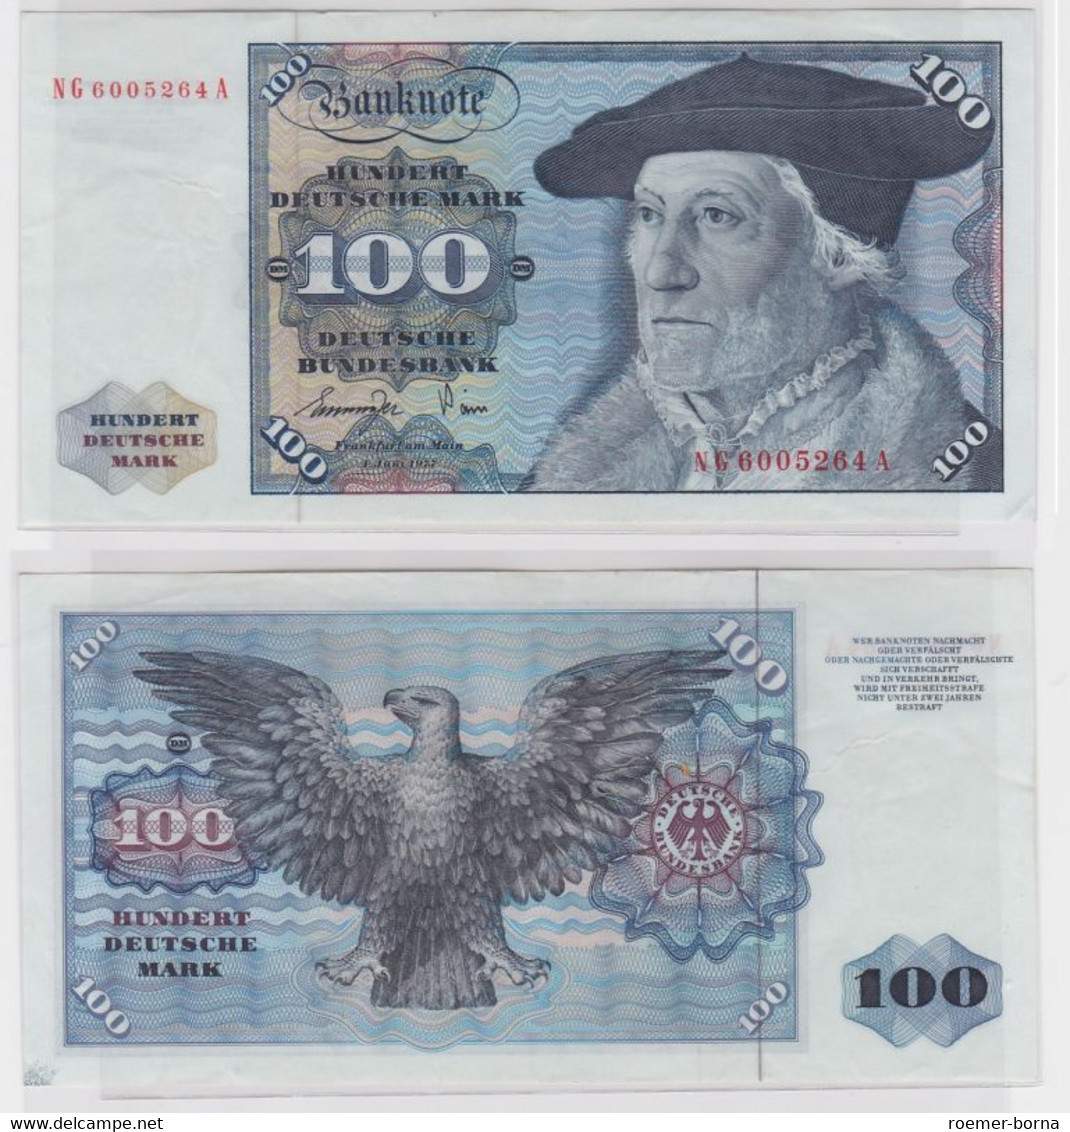 T145383 Banknote 100 DM Deutsche Mark Ro 278a Schein 1.Juni 1977 KN NG 6005264 A - 100 DM